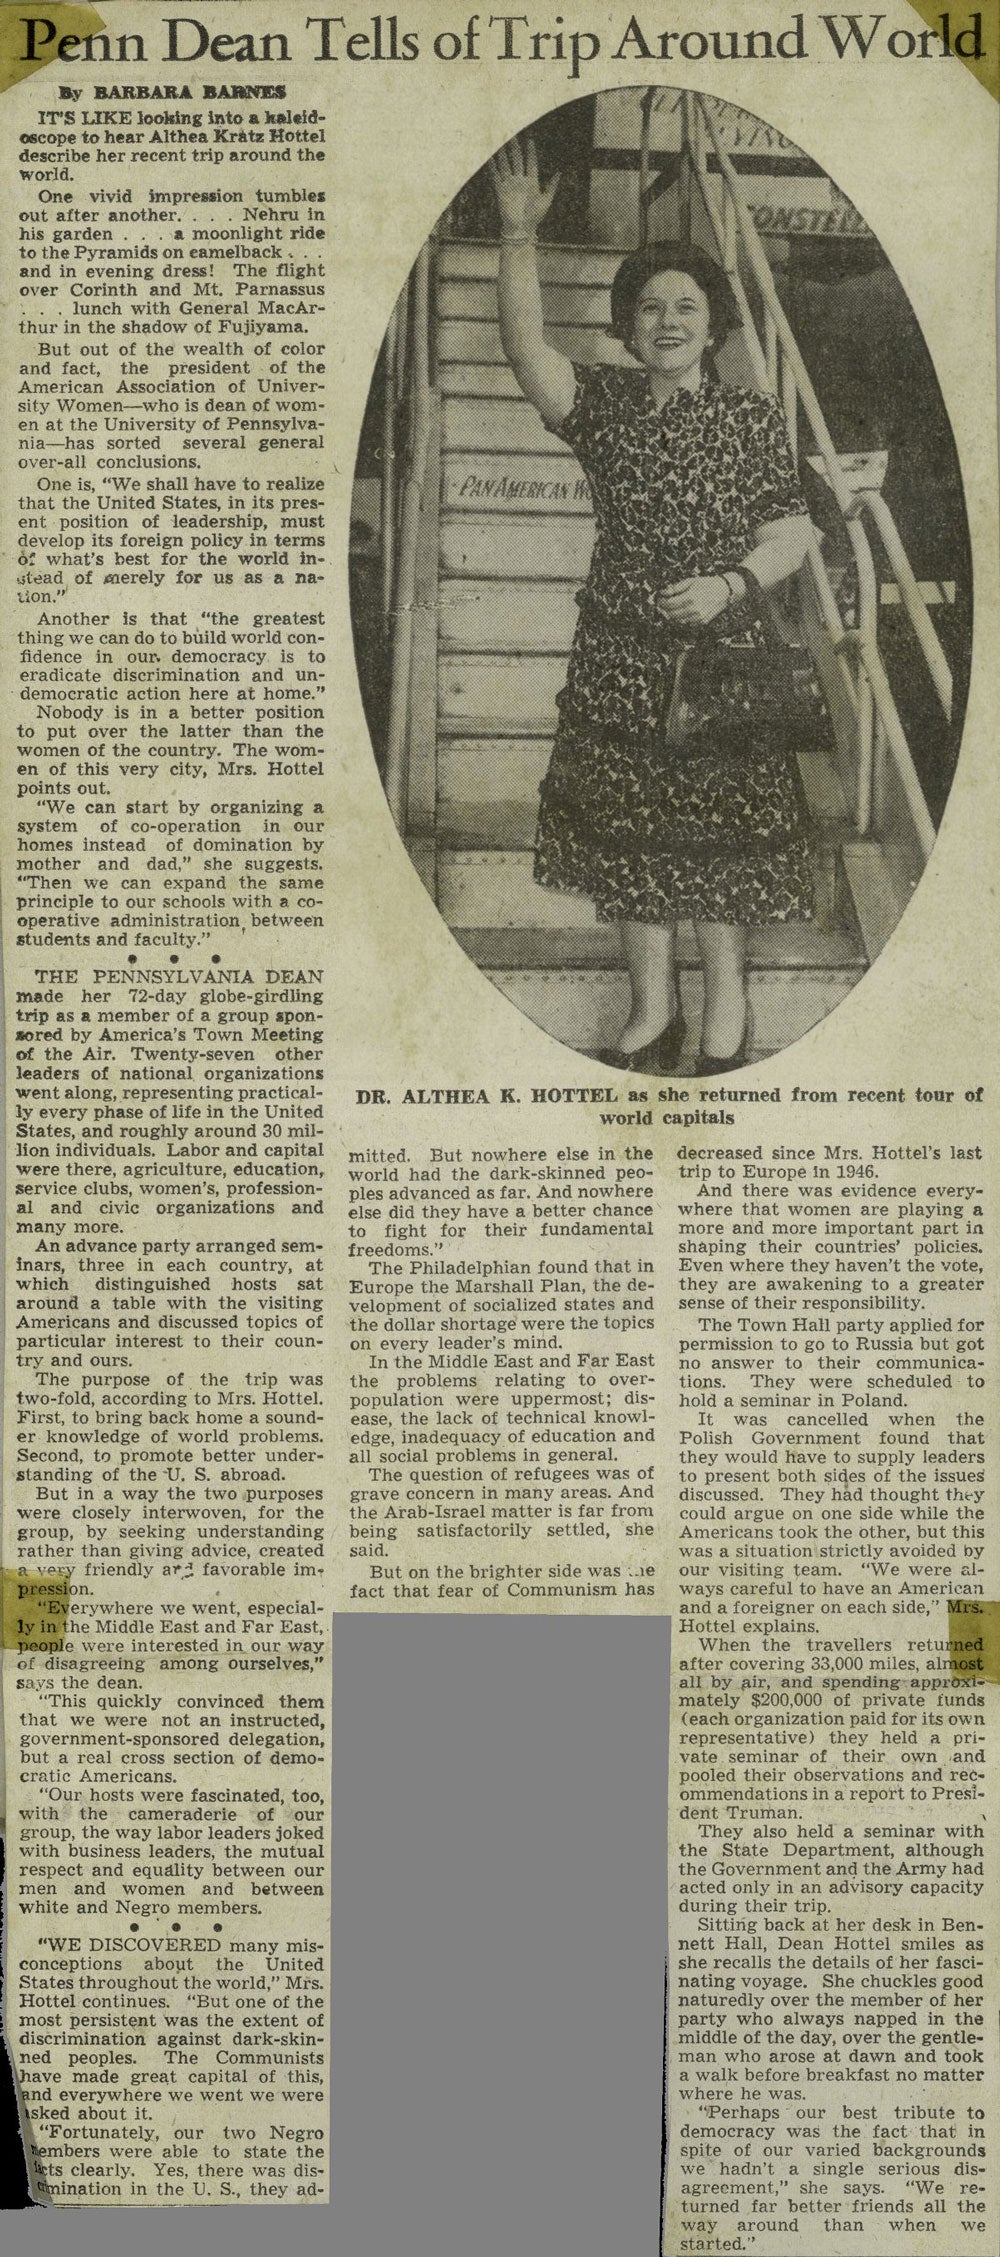 Althea Kratz Hottel, world travels as Penn Dean, news article, 1949